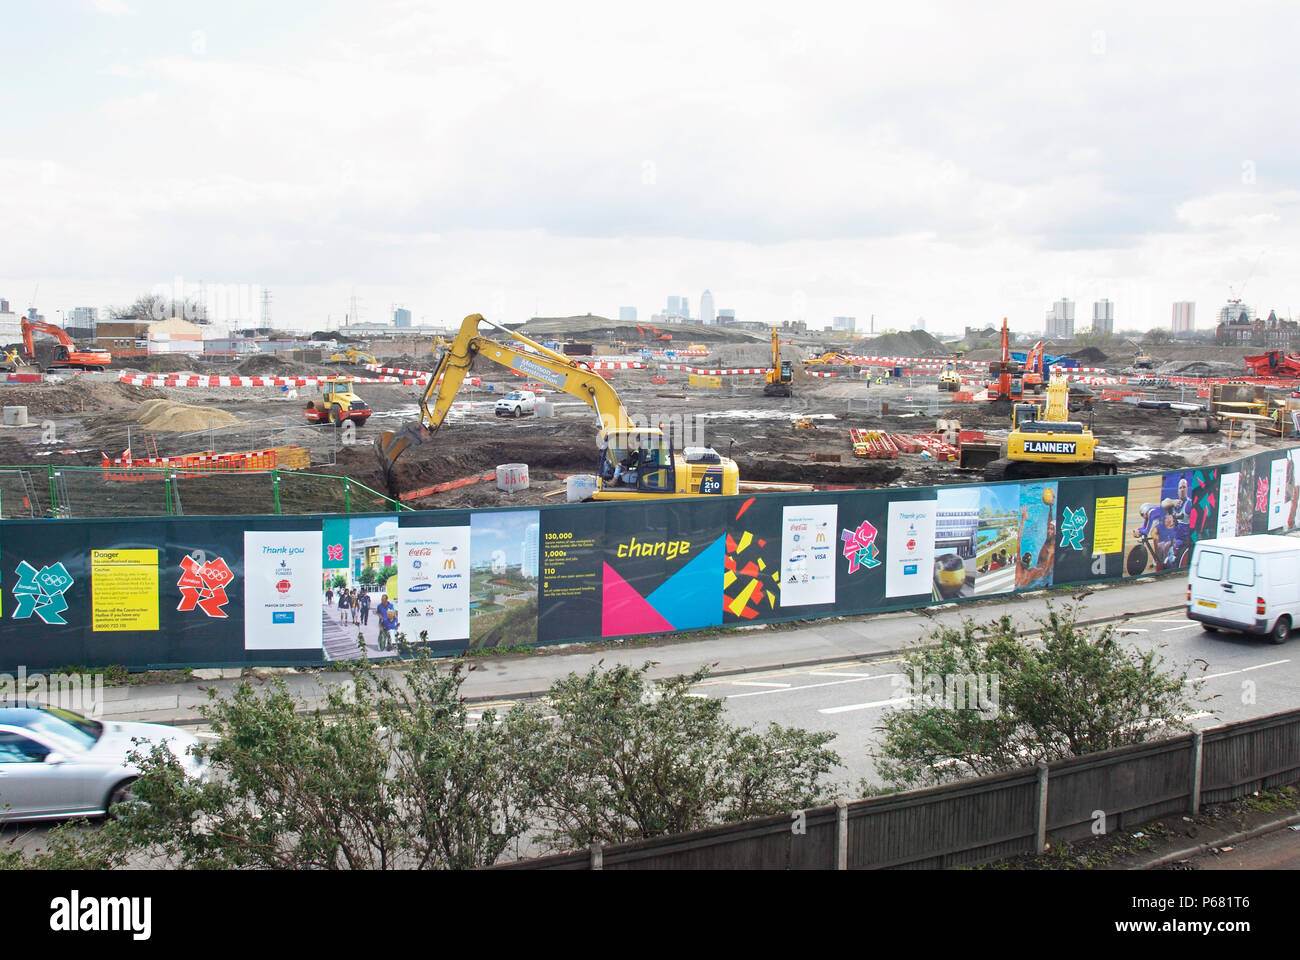 Olympic sito in costruzione e cartelloni, Stratford, guardando a sud verso Canary Wharf e Canning Town, Londra, Regno Unito, 2008 Foto Stock